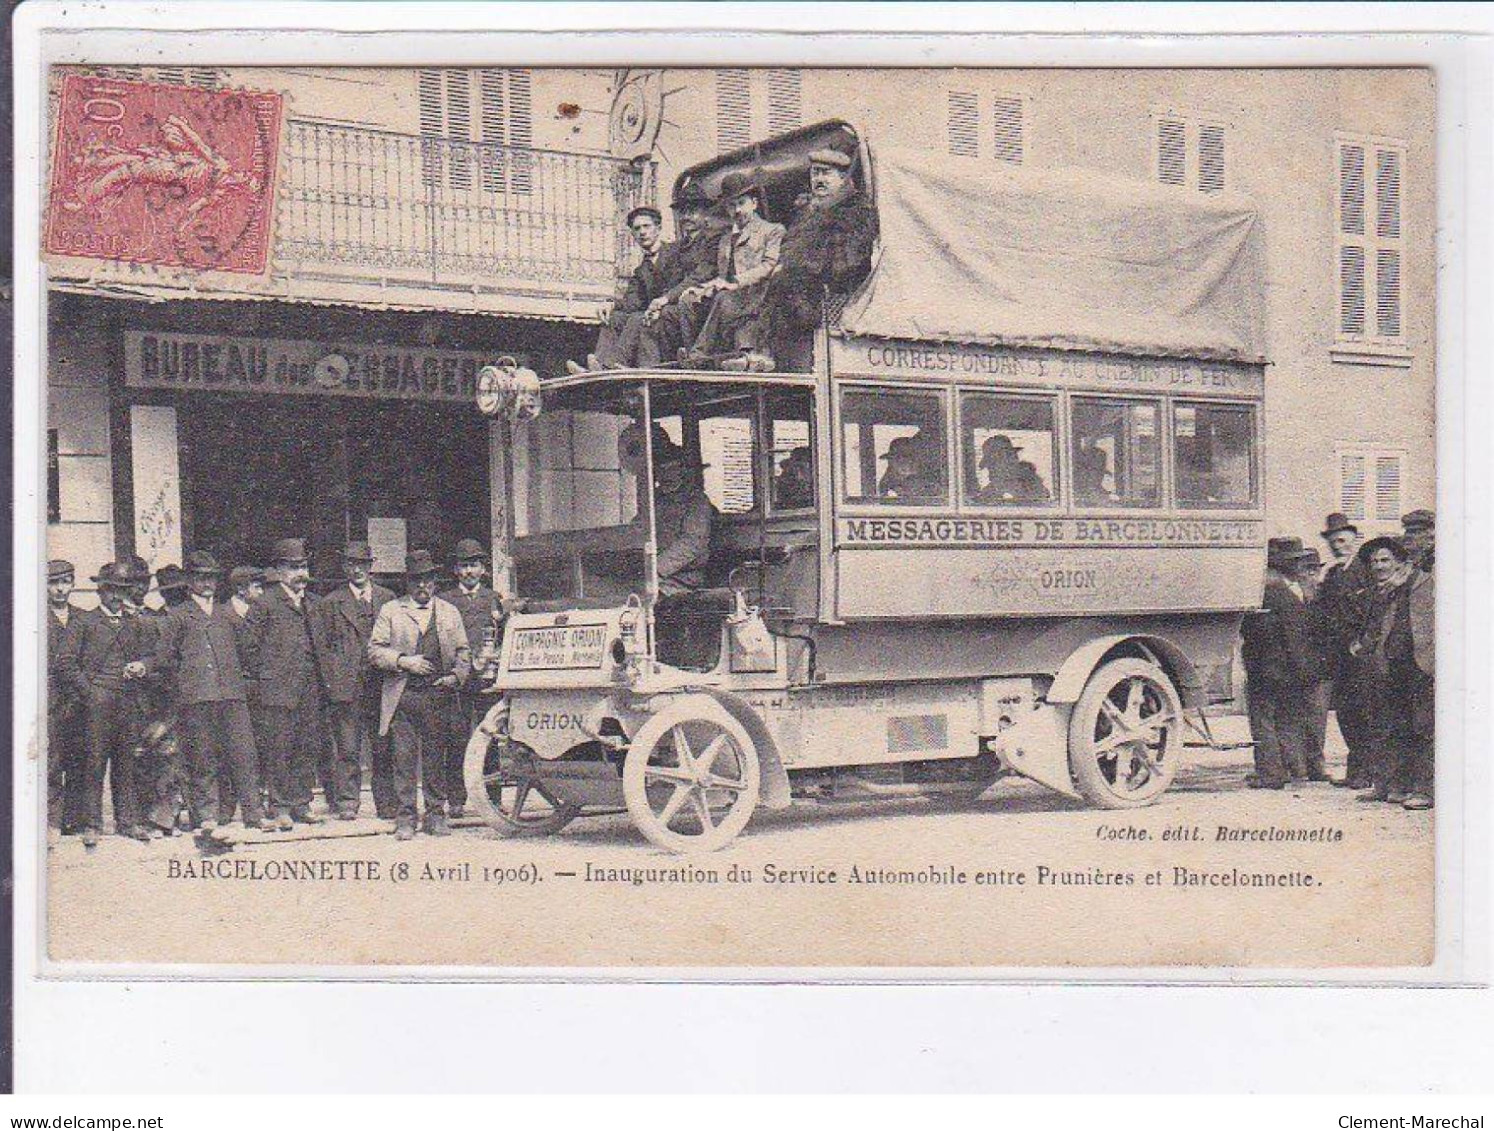 BARCELONNETTE: Inauguration Du Service Automobile Entre Prunières Et Barcelonnette - état - Barcelonnette